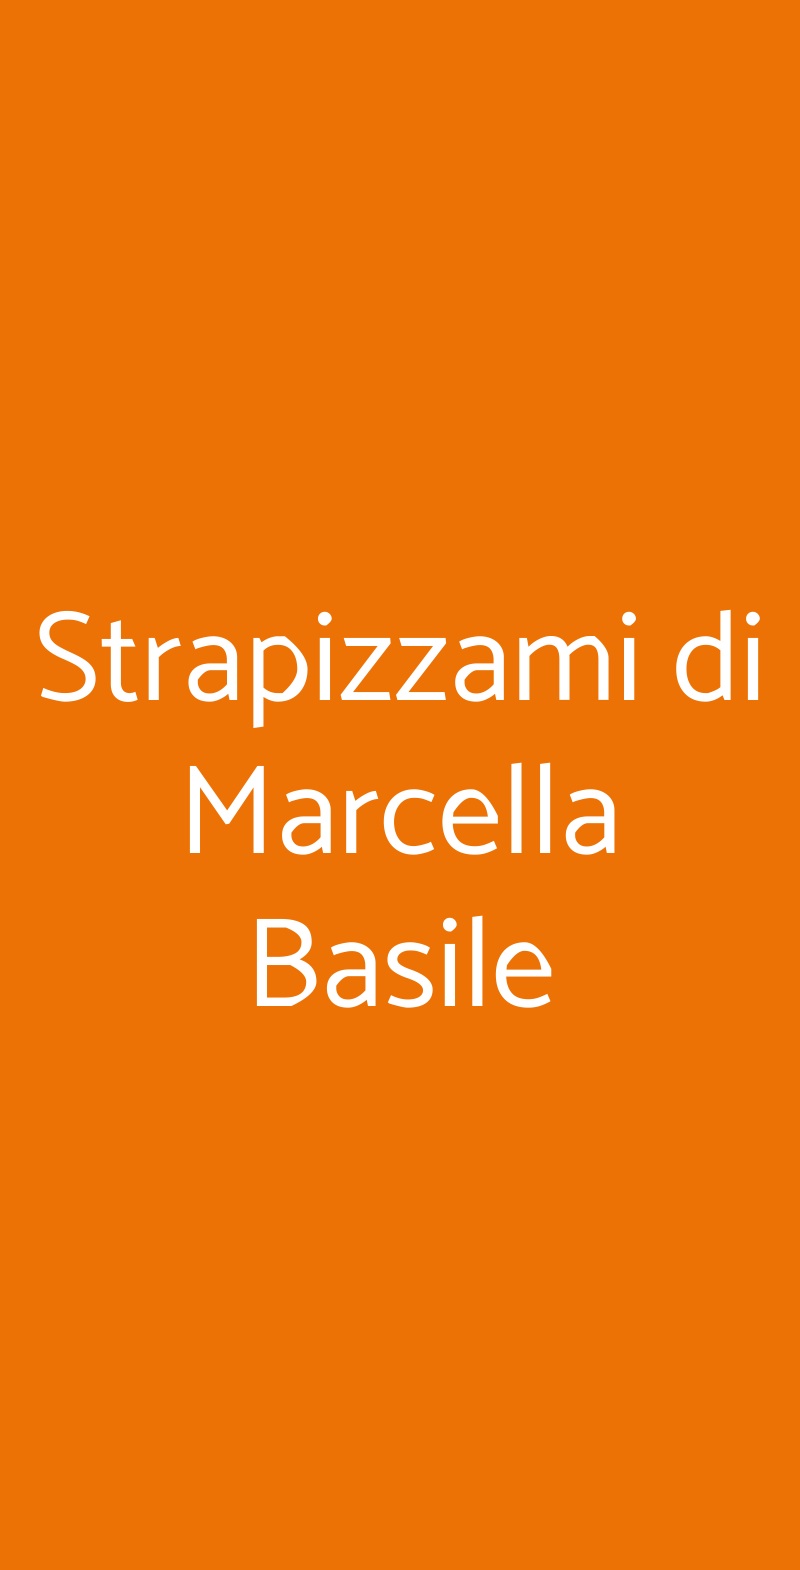 Strapizzami di Marcella Basile Palermo menù 1 pagina